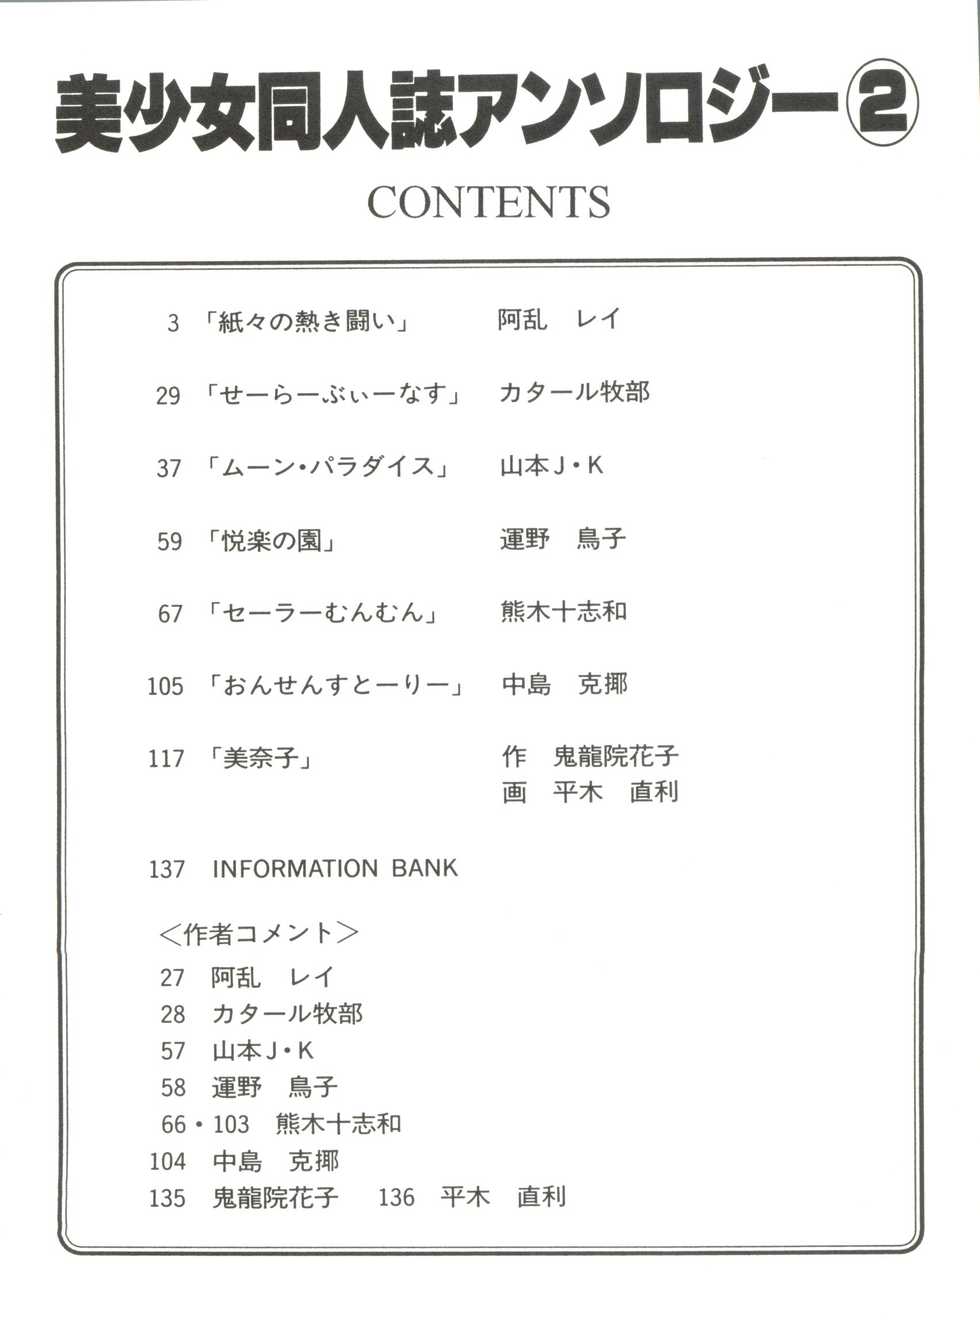 [Anthology] Bishoujo Doujinshi Anthology 2 - Moon Paradise 1 Tsuki no Rakuen (Bishoujo Senshi Sailor Moon) - Page 5